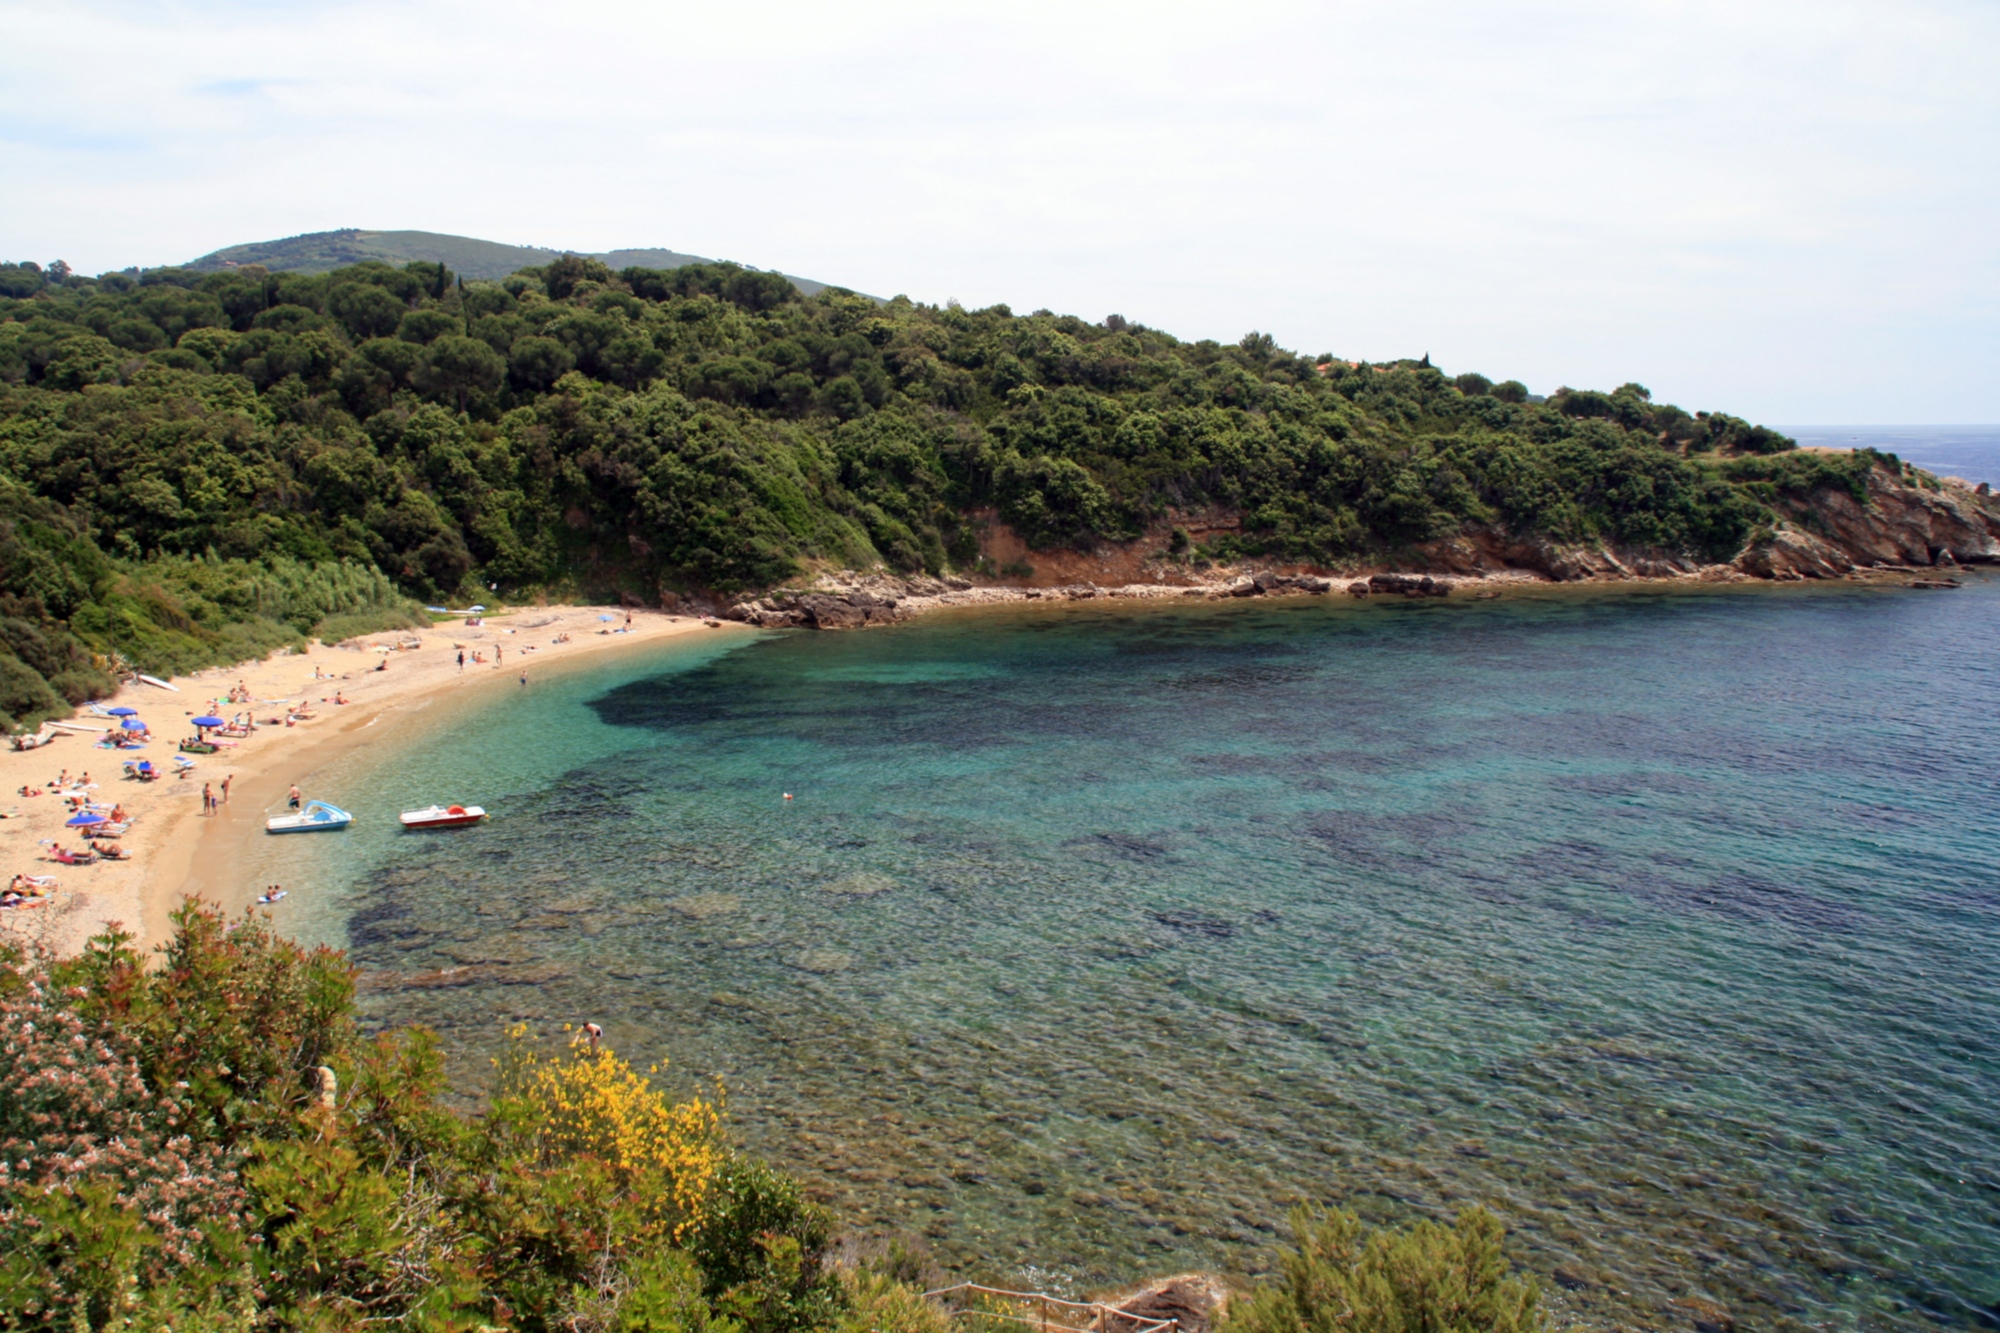 Barabarca beach